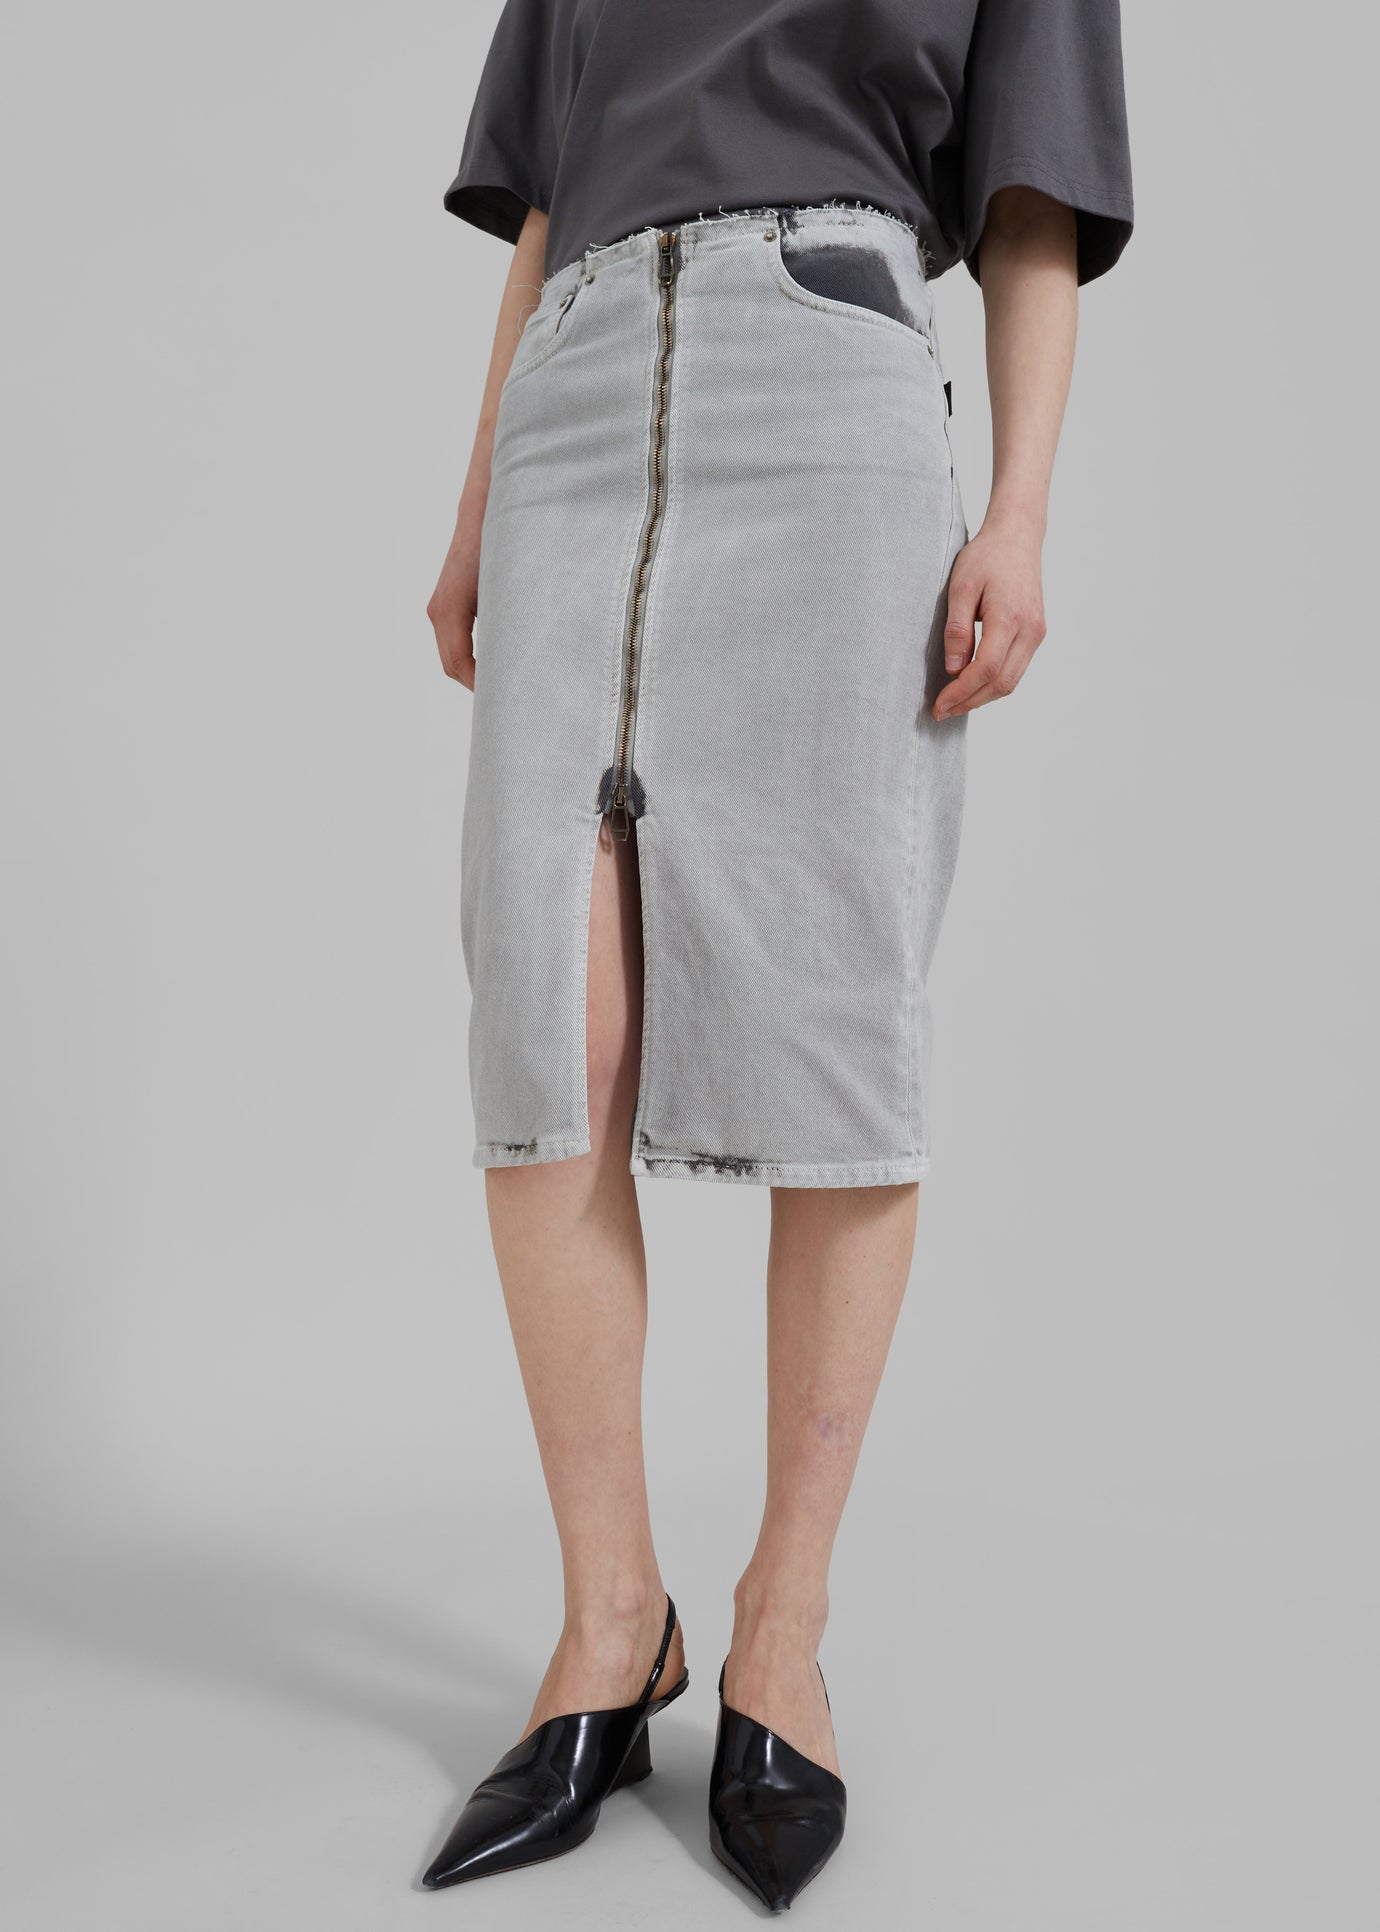 Haikure Tiger Skirt - Shifting Grey